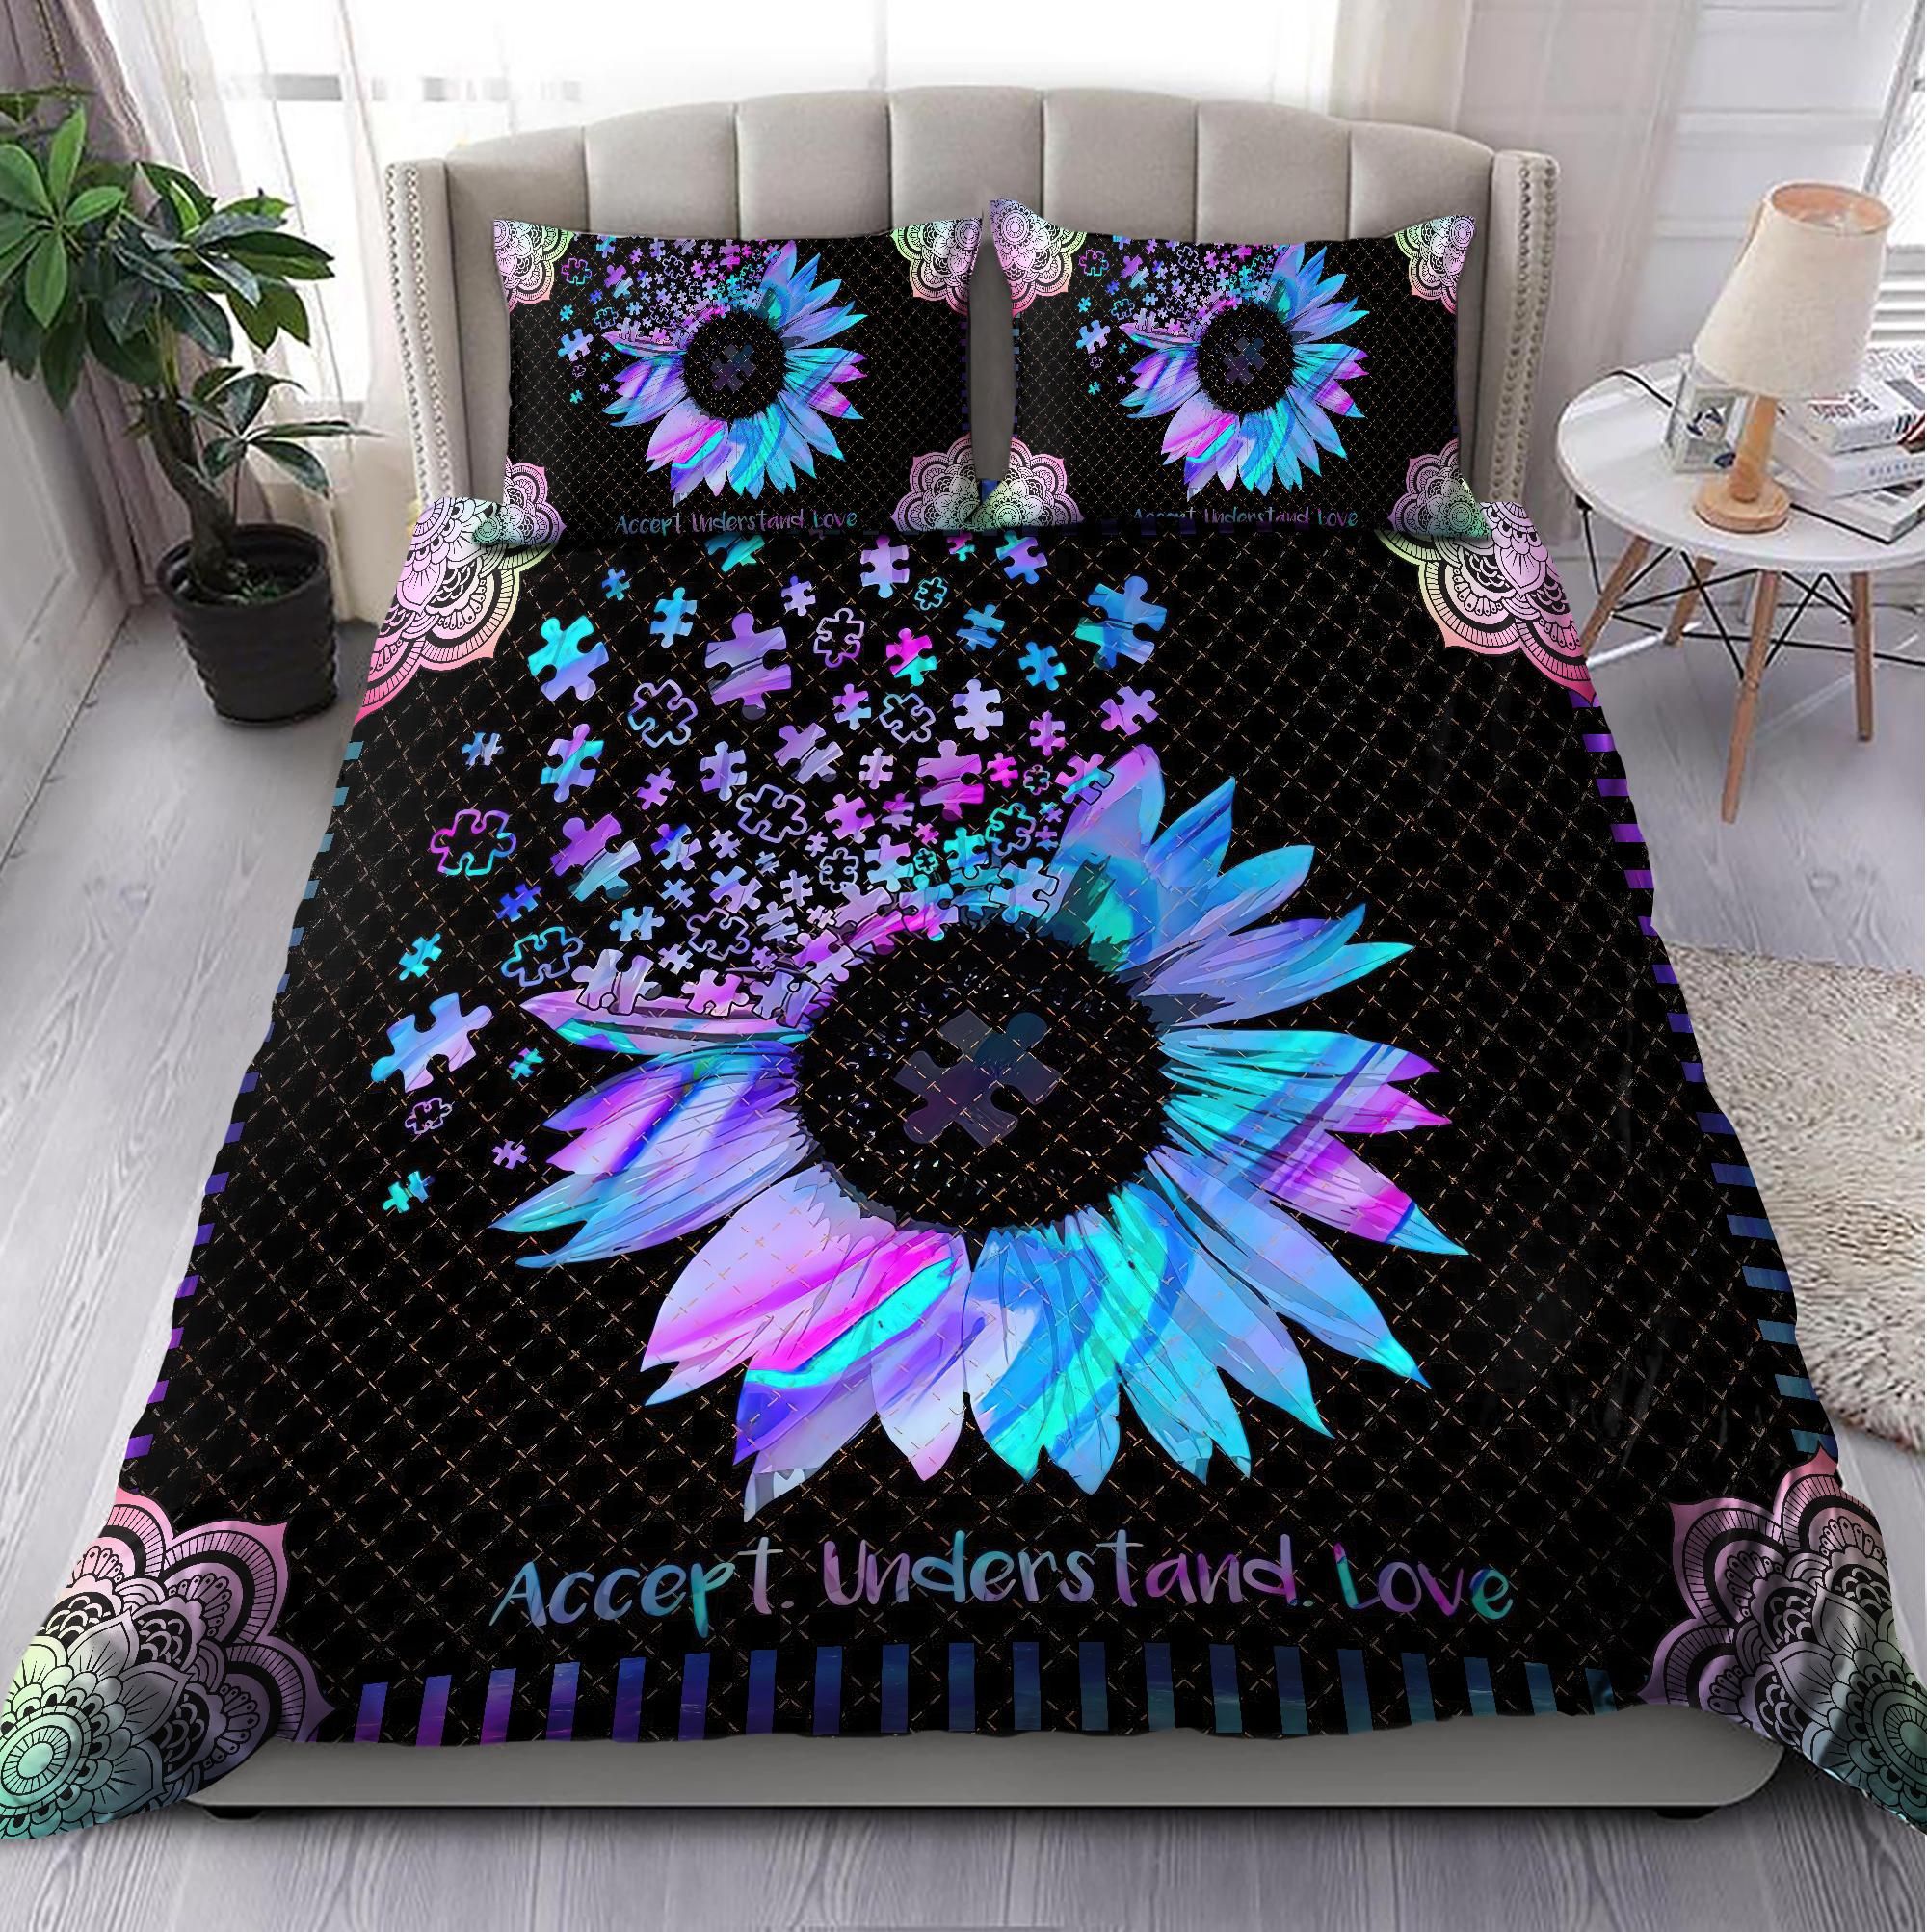 Autism Awareness - Sunflower Bedding Set Xt